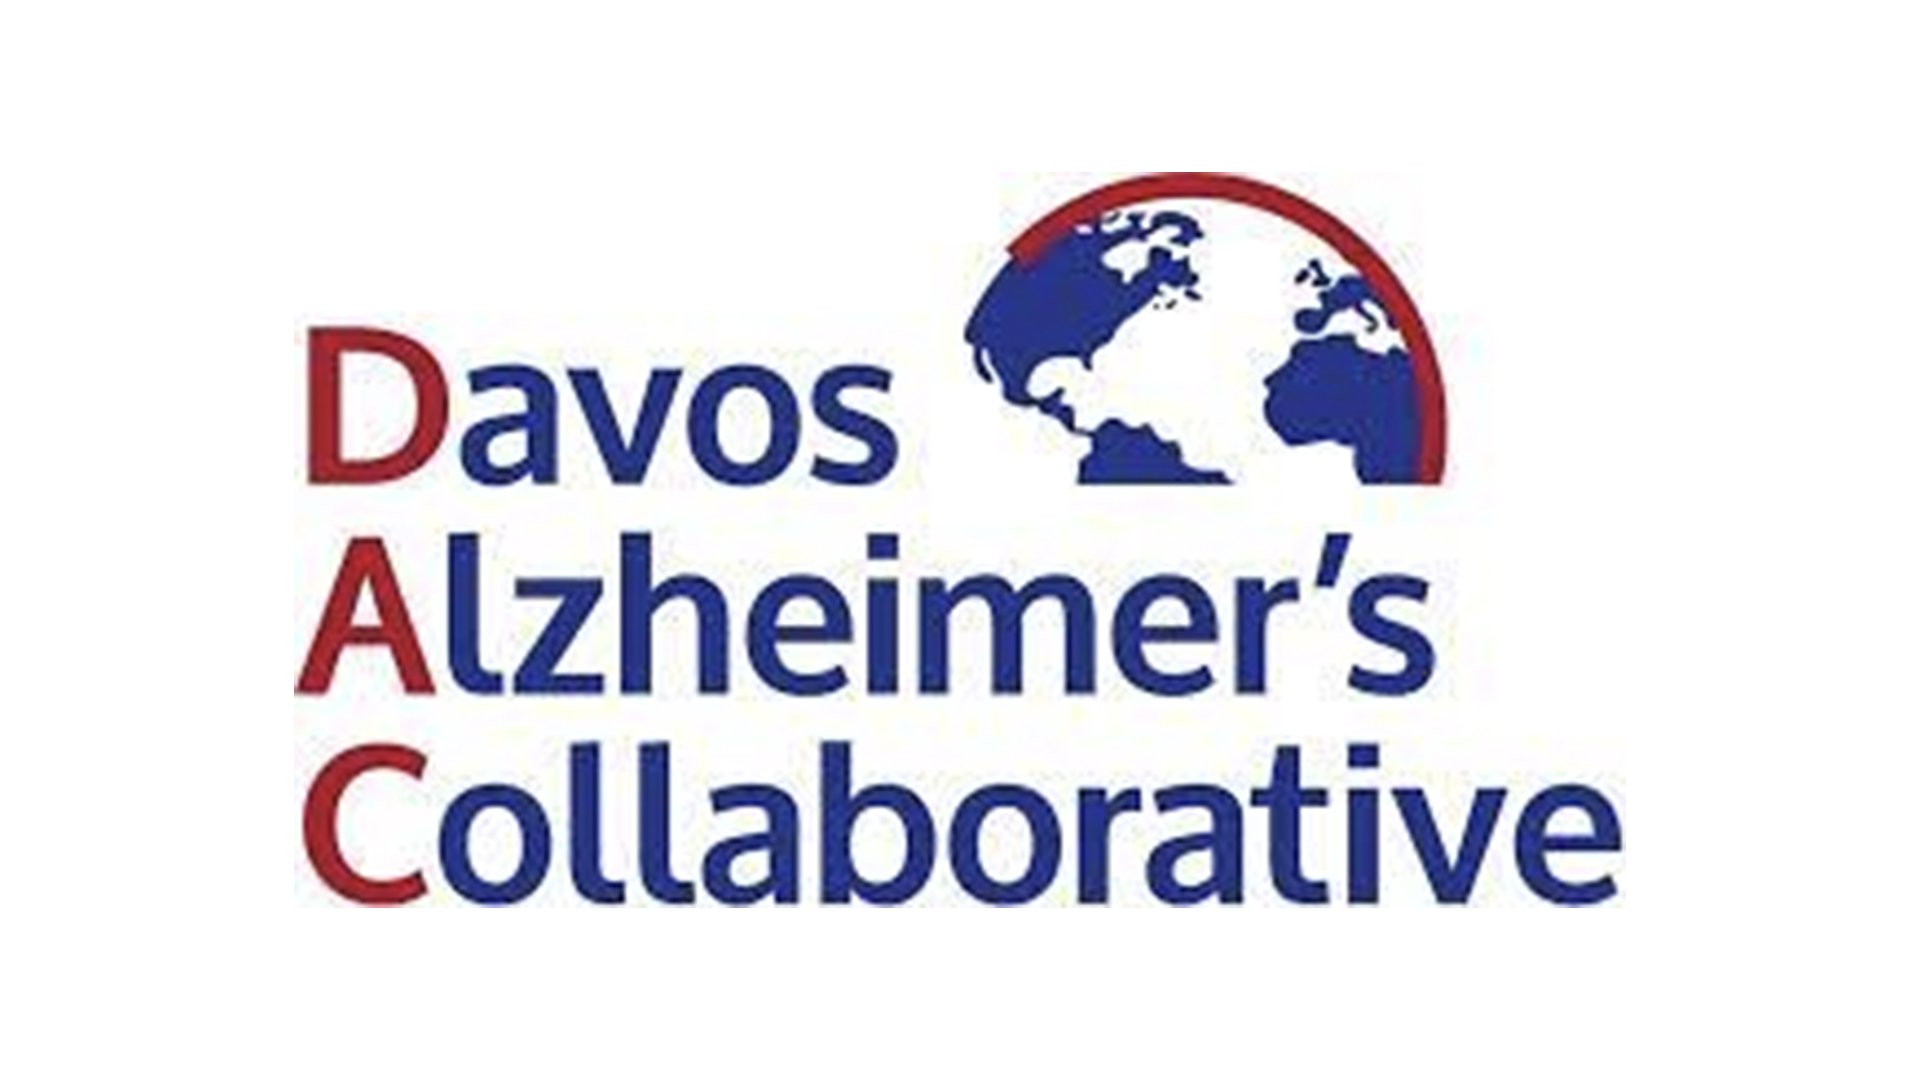 CEOi_0009_Davos Alzheimer’s Collaborative.jpg